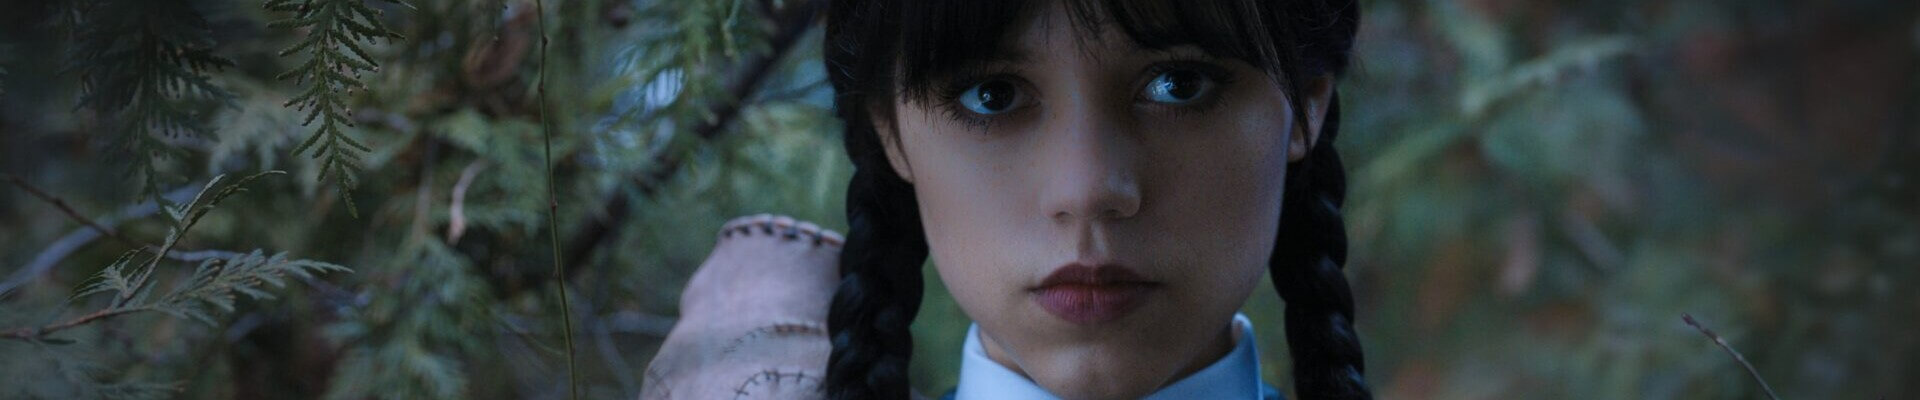 Jenna Ortega em cena de 'Wandinha', da Netflix (Crédito: Netflix)